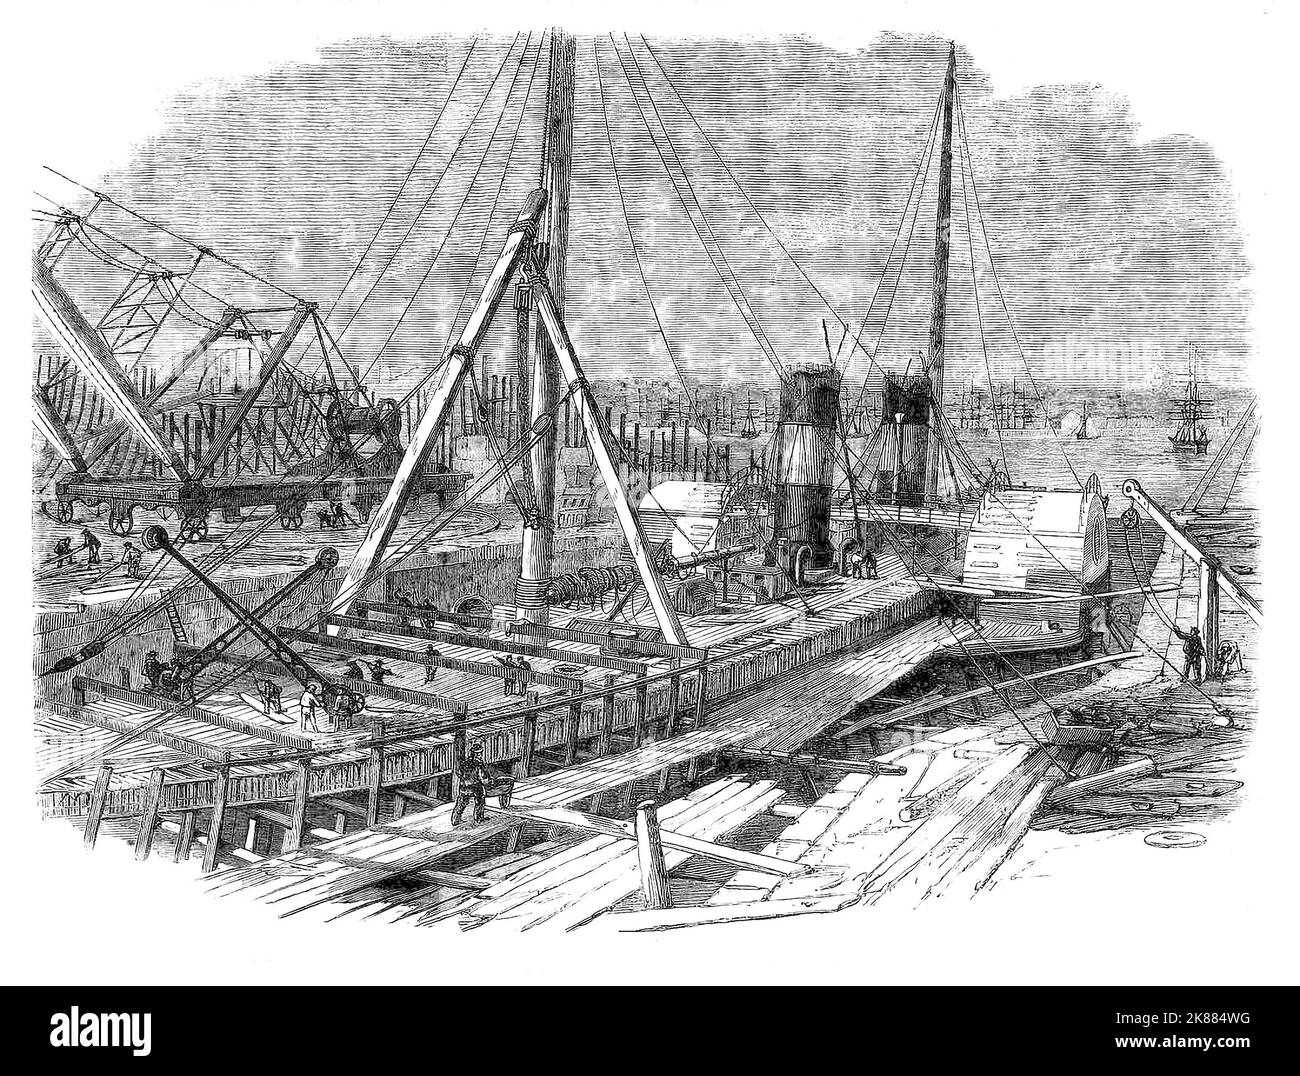 Die 'Hibernia', ein Schiff mit Sitz in Galway, Irland, wird in den Eisenwerken und Docks von Birkenhead repariert, die 1824 errichtet wurden. In den nächsten 30 Jahren bauten sie etwa 300 Schiffe für die USA, Länder des gesamten Imperium und die Admiralität, die 2-3.000 Mann beschäftigen. An der Wende des 20.. Jahrhunderts wurde Cammell Laird. Birkenhead, Merseyside, England Stockfoto